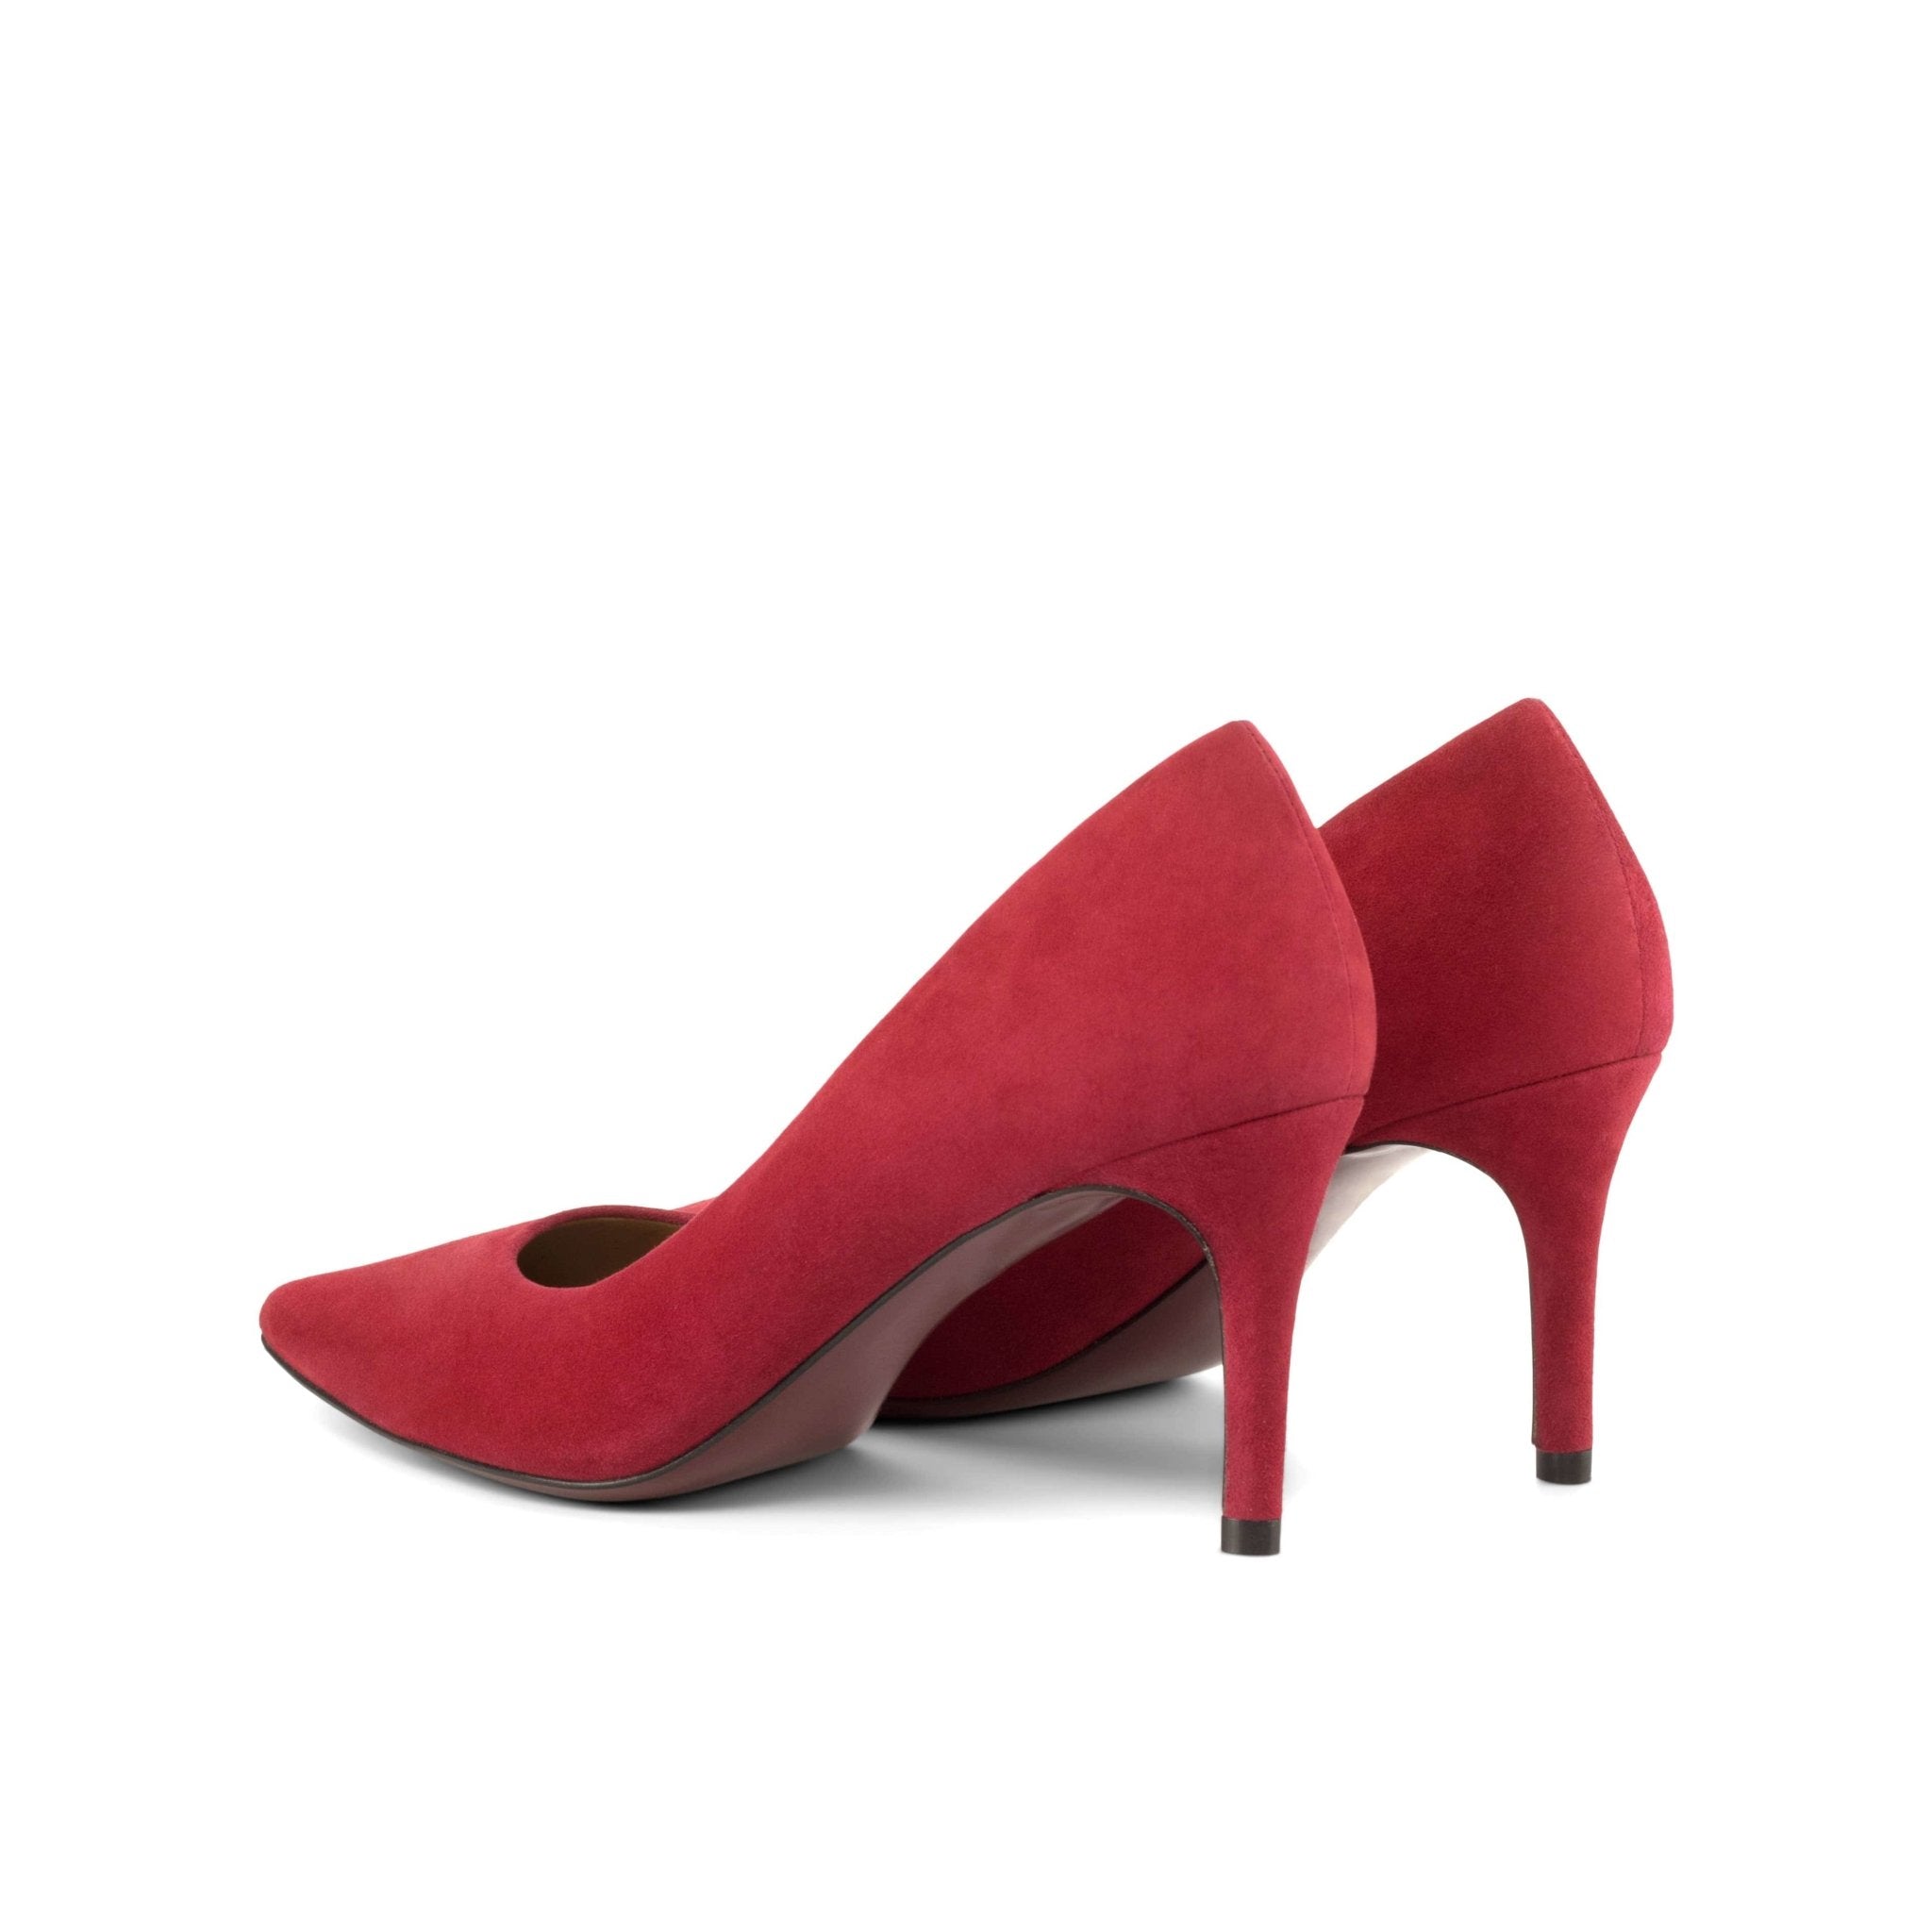 Harmonie 70mm Suede Passion Red Leather Heels - Maison de Kingsley Couture Harmonie et Fureur Spain